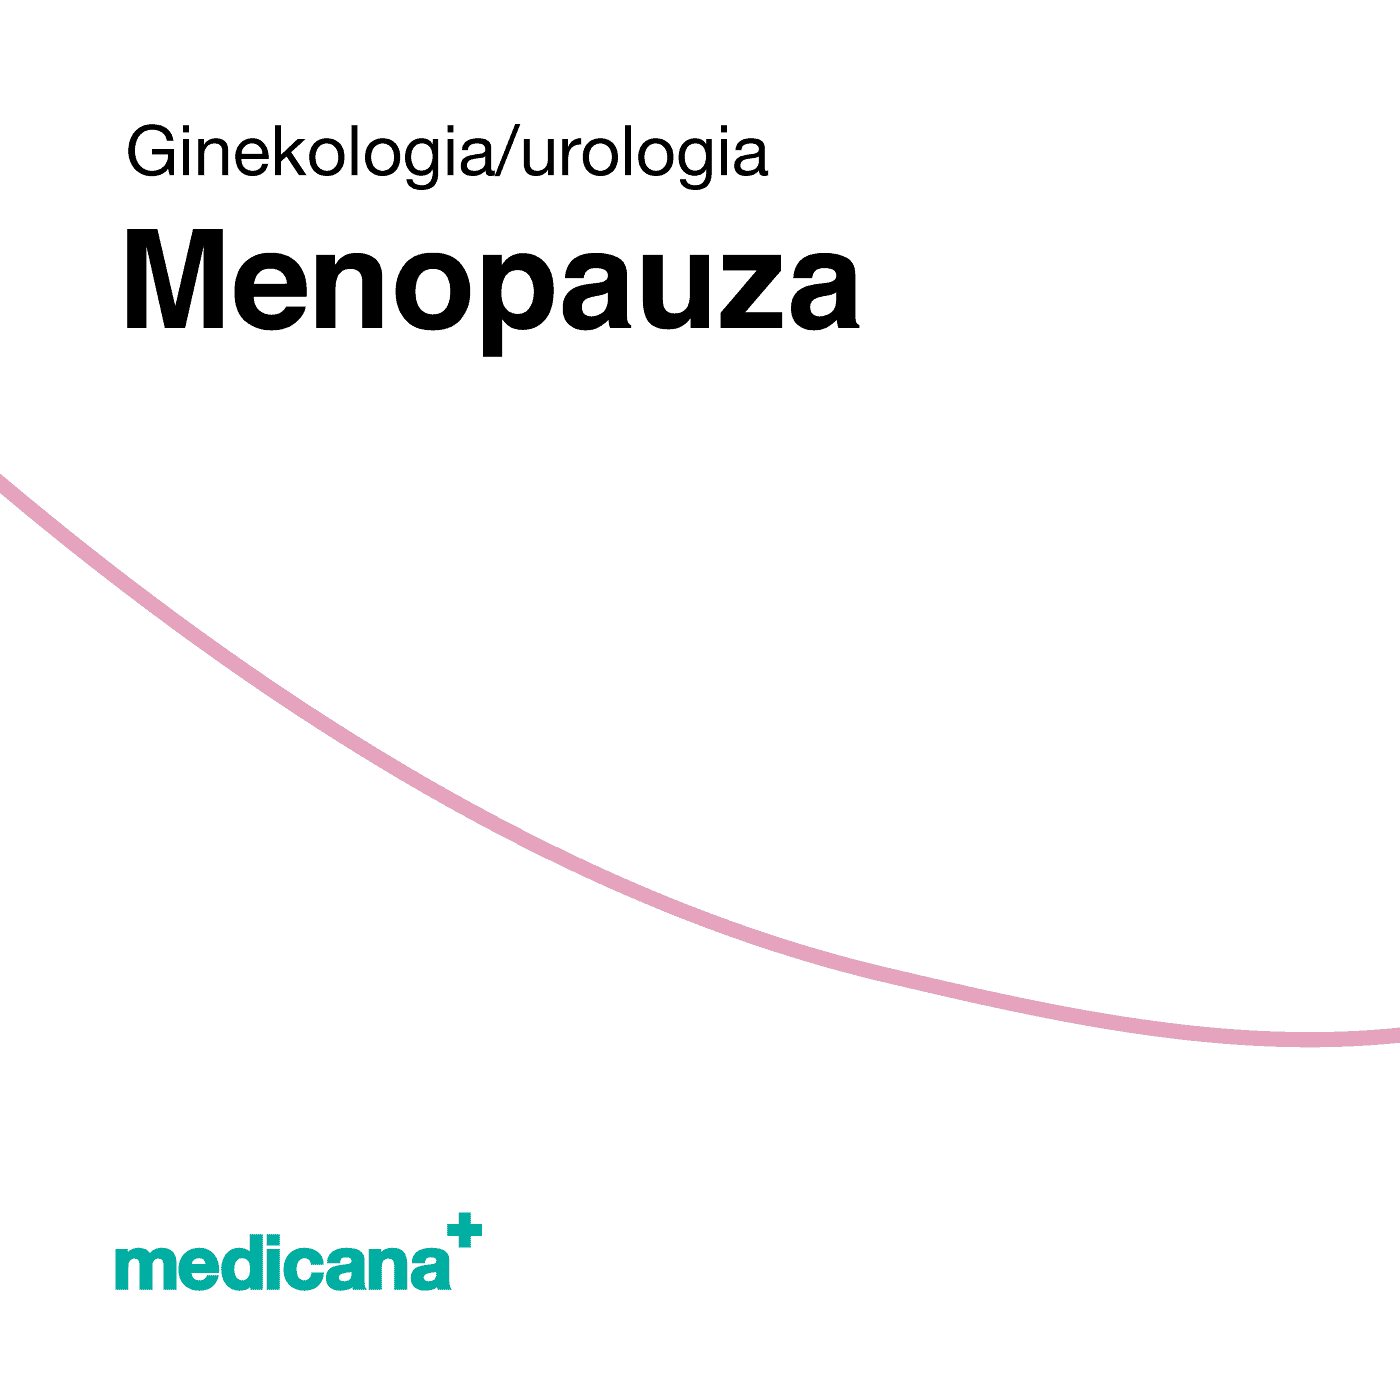 Grafika, białe tło różową kreską, czarnym napisem Ginekologia / Urologia - Menopauza i logo Medicana Centrum Terapii Medyczna Marihuana w lewym dolnym rogu.